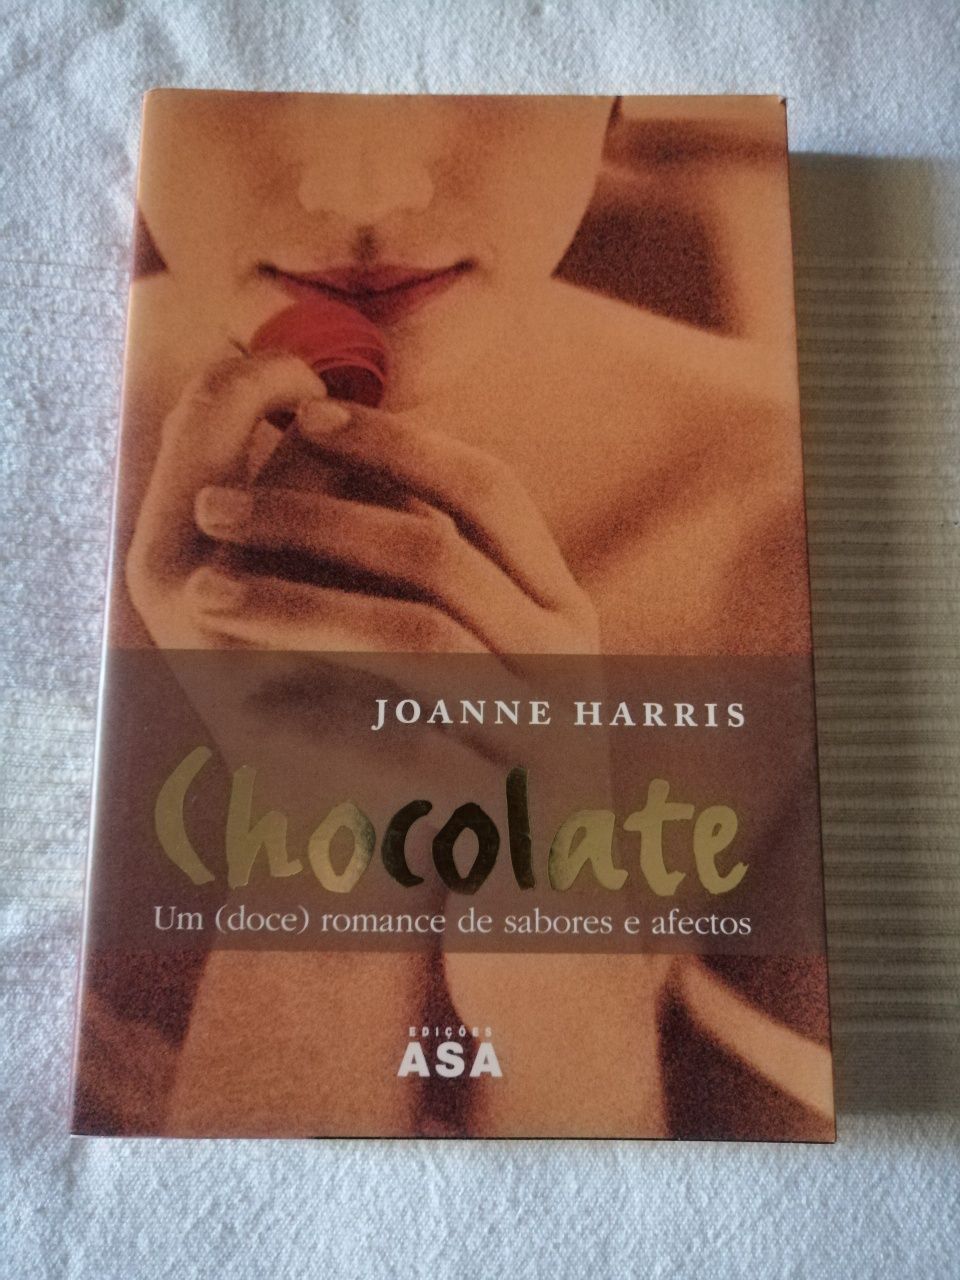 Livros da autora Joanne Harris com portes incluídos